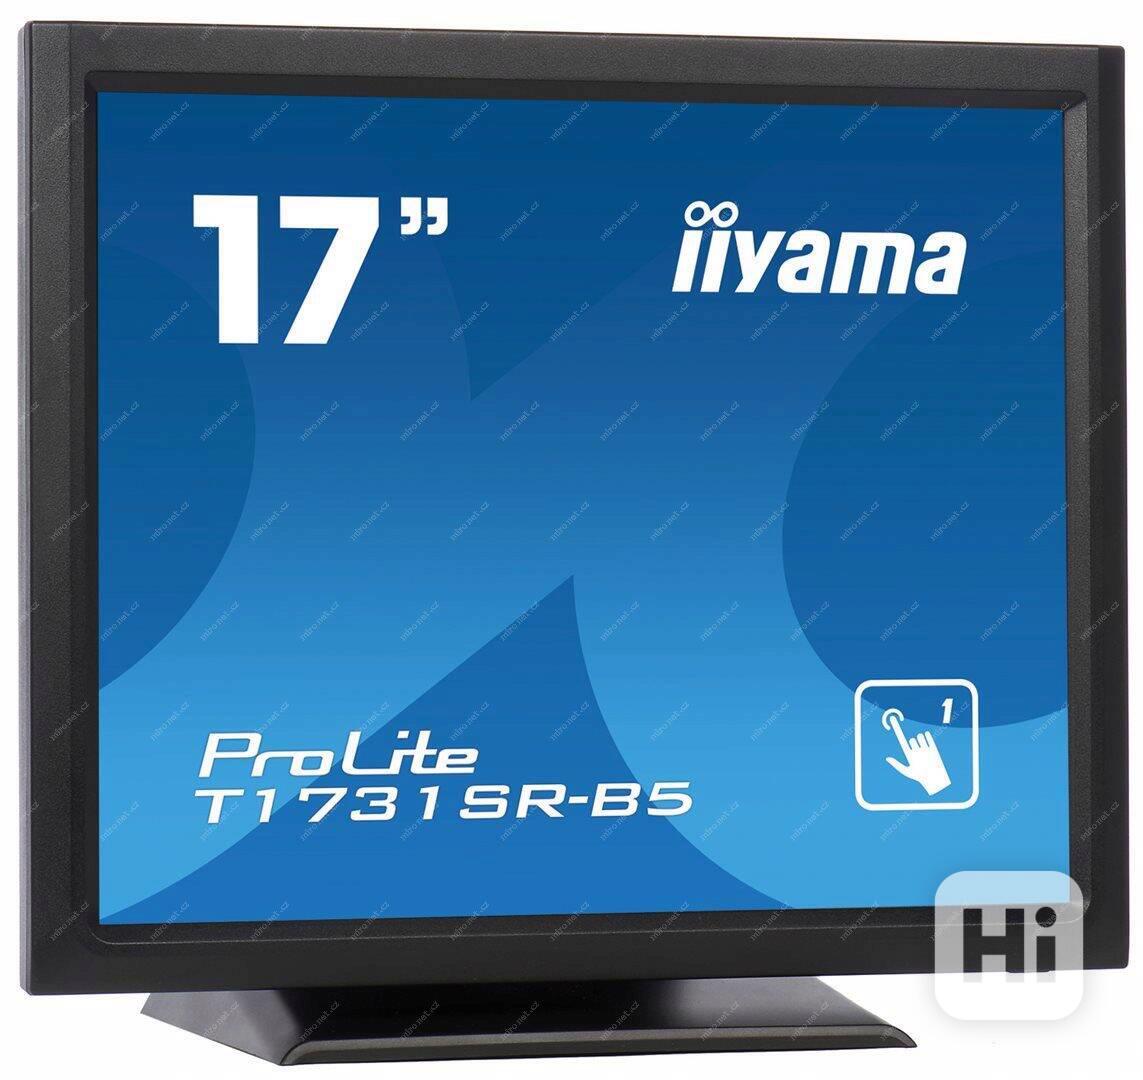 Prodám dotykový, 100% funkční LCD monitor značky iiYAMA - foto 1